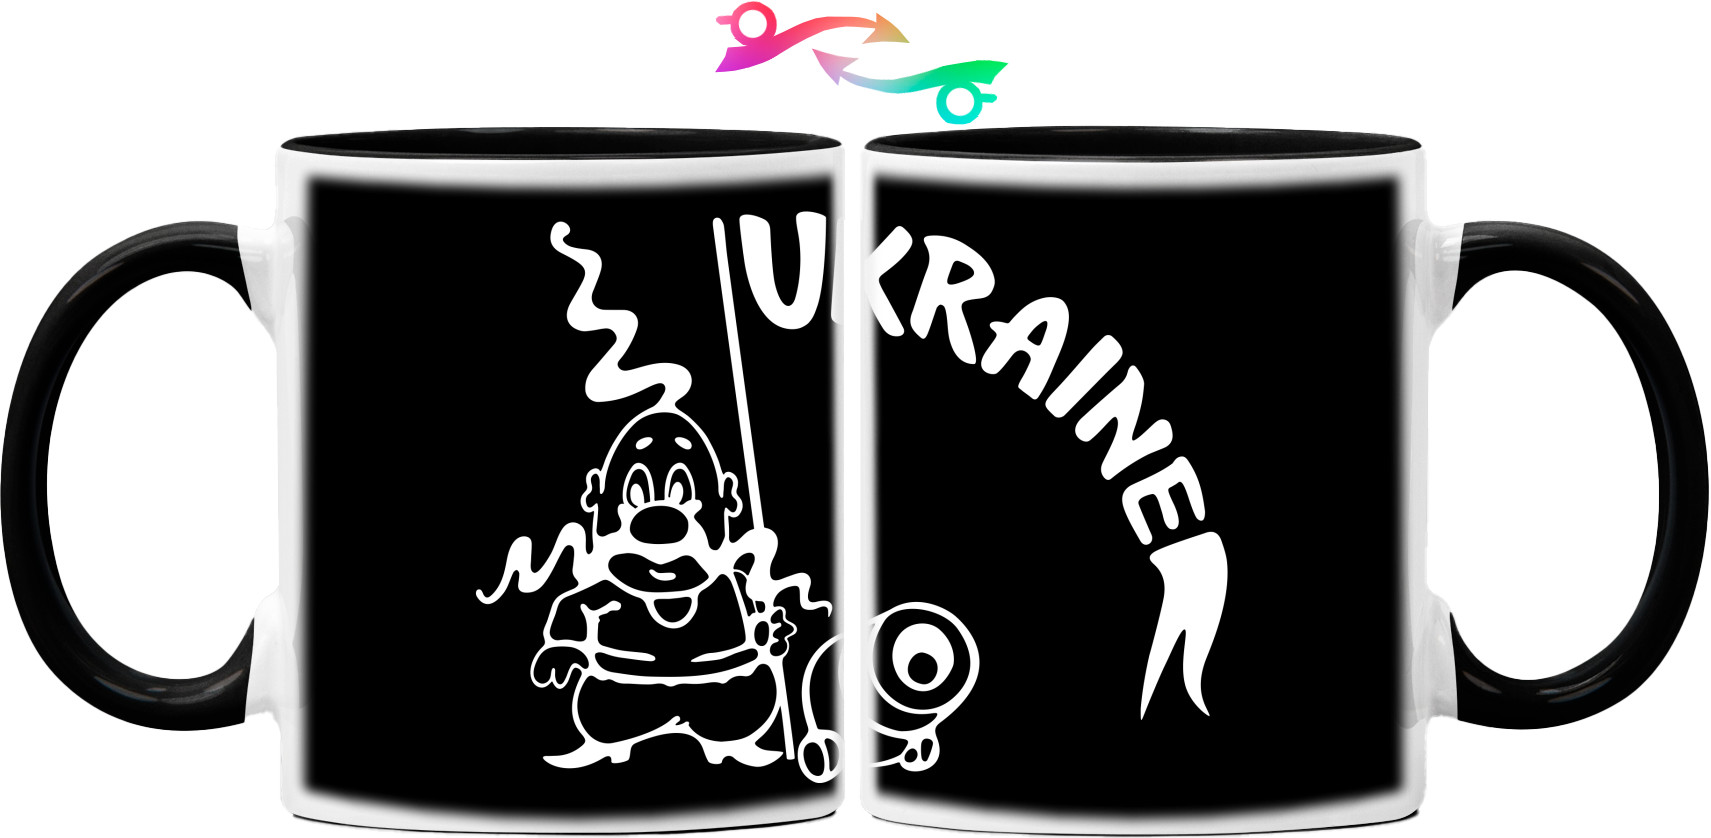 Ukraine козак